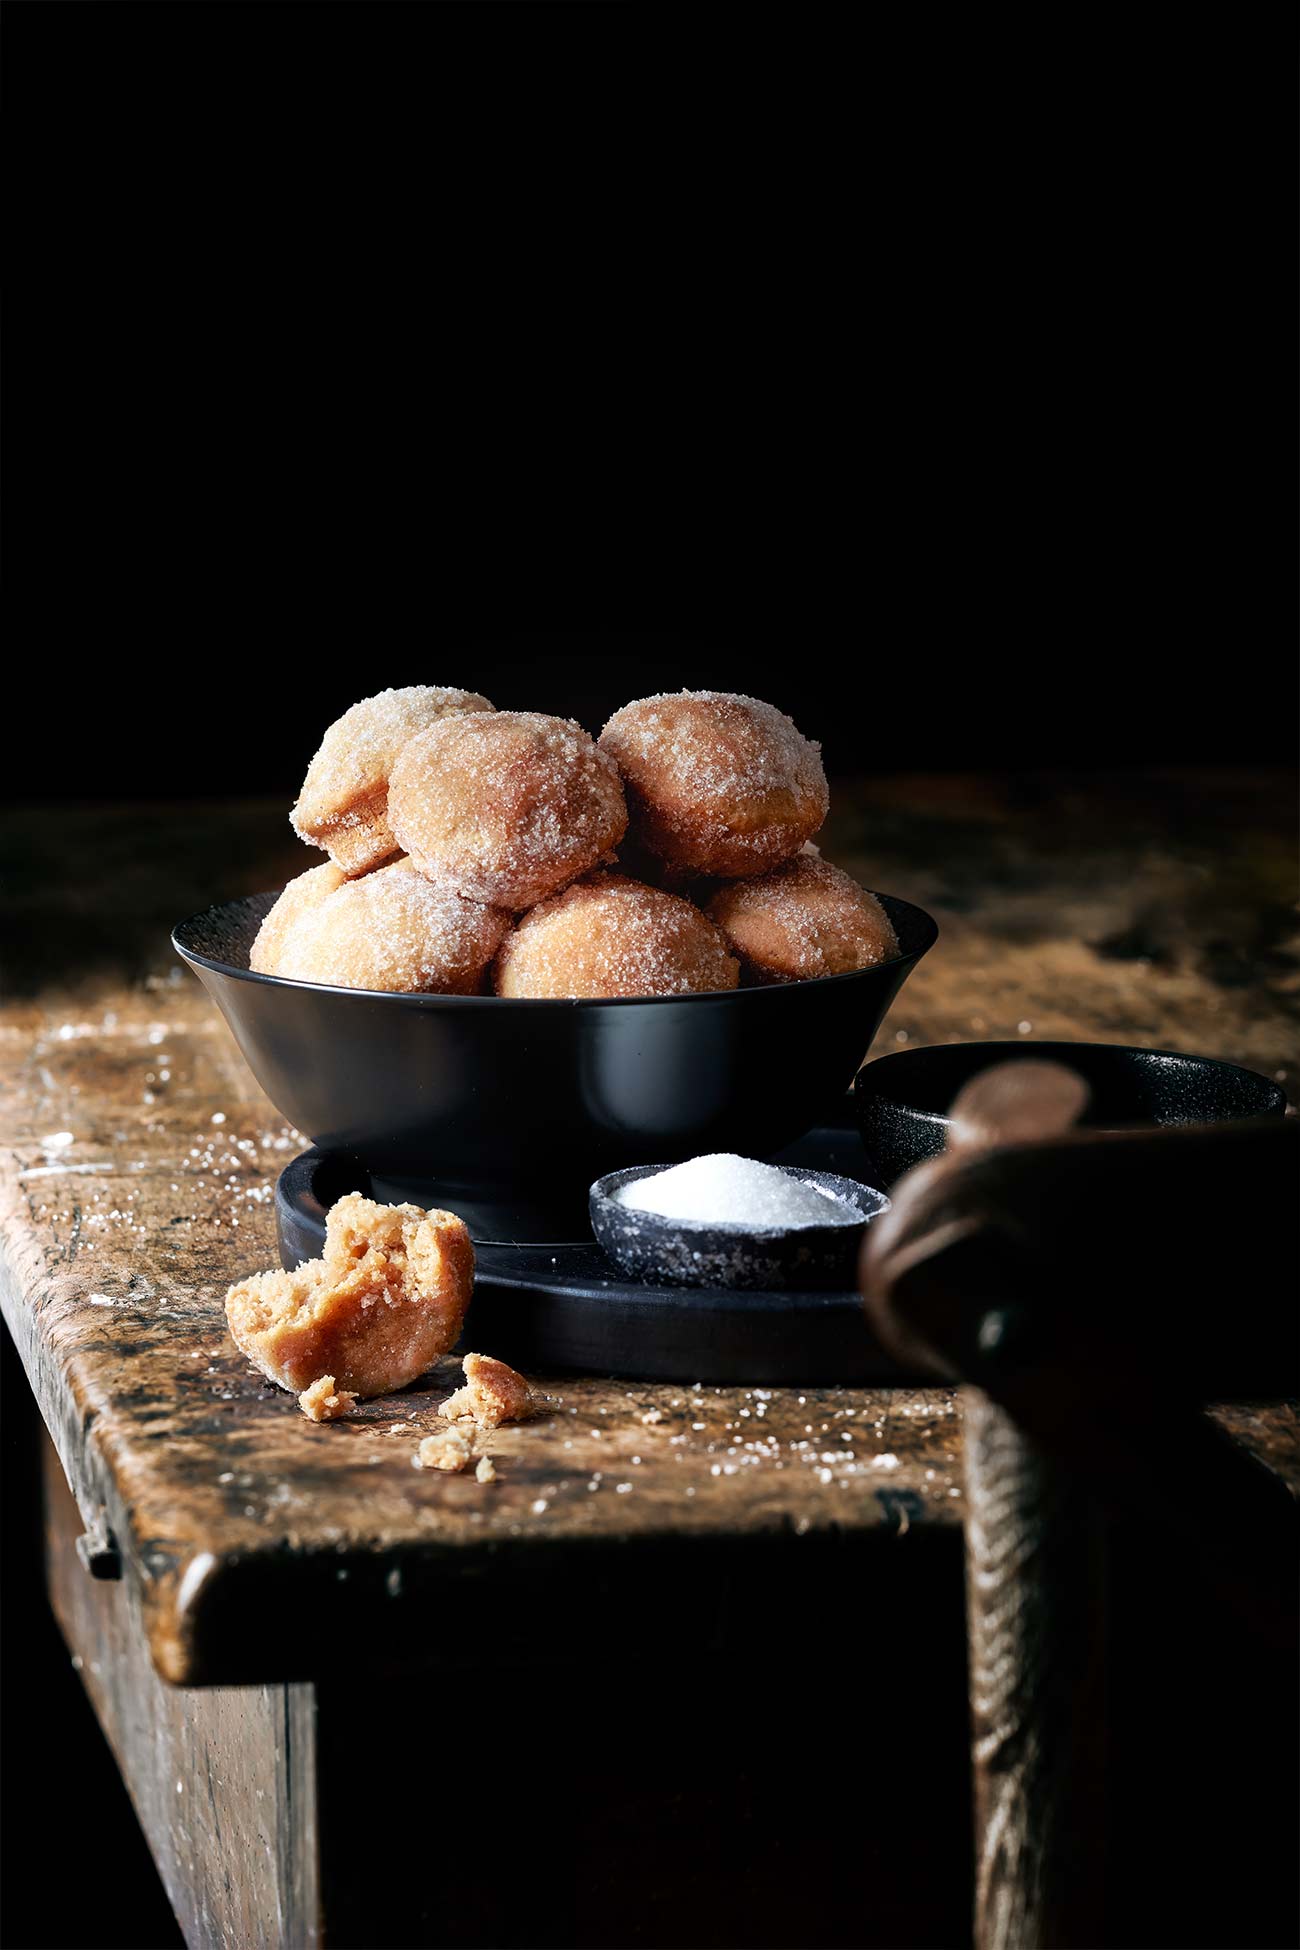 Den Duft der gebackenen Donut-Muffins würde ich am liebsten einpacken und in eine Duftkerze packen. Noch großartiger ist aber der Geschmack. Saftig, locker…wie ein Donut schmecken sollte. Mit warmen, winterlichen Gewürzen und einer buttrigen Zimt-Zuckerkruste. Die müsst ihr einfach nachbacken. 